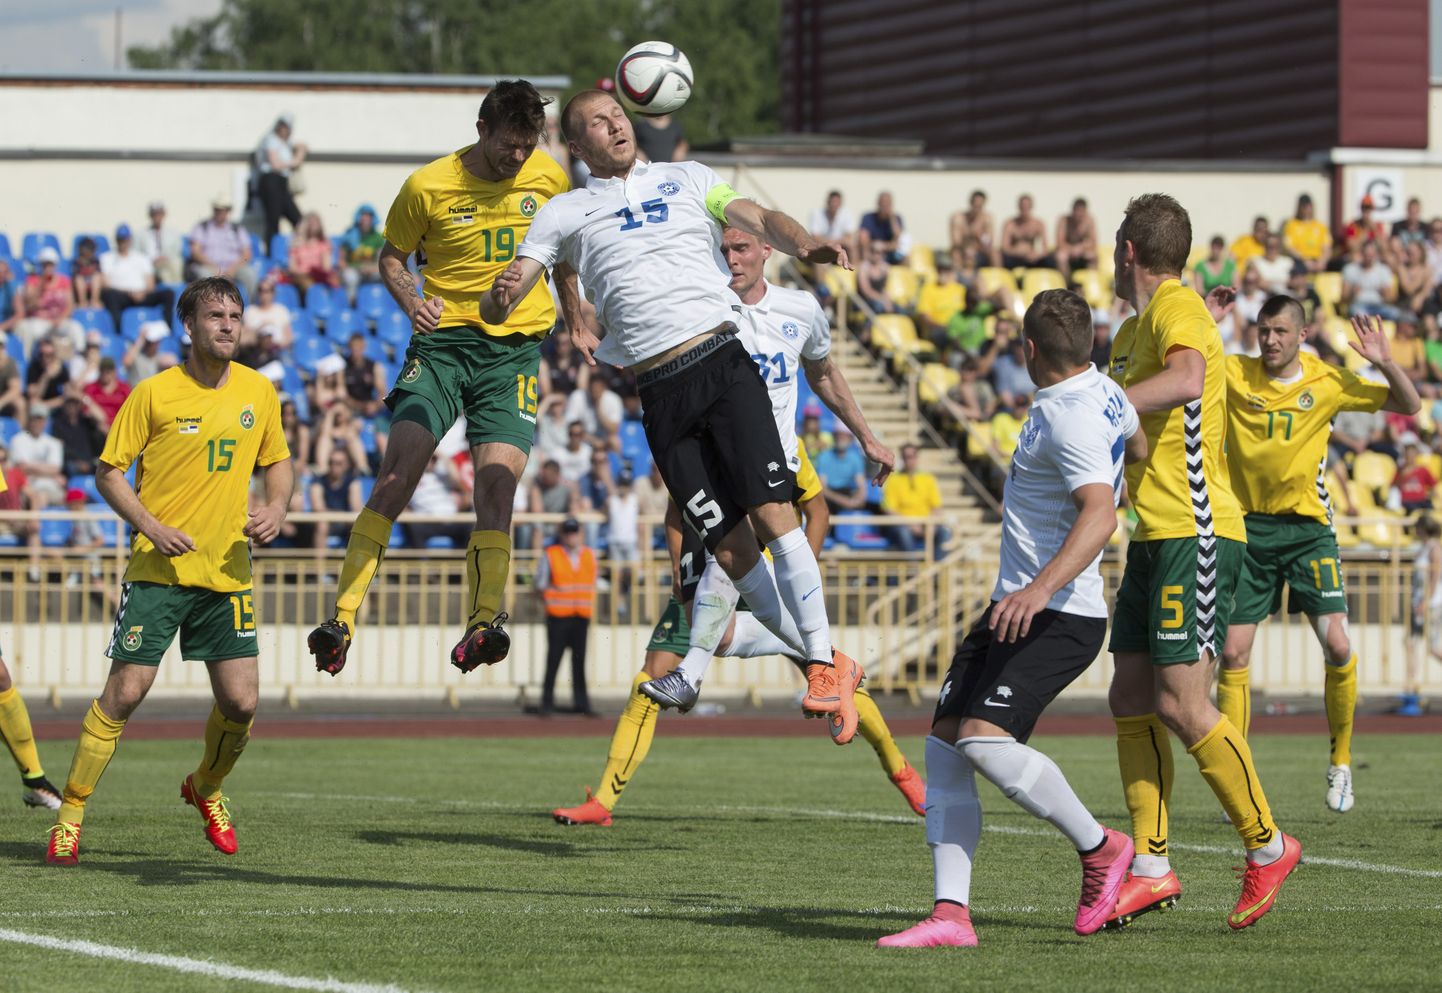 Senised Eesti ja Leedu vastasseisud on pakkunud Balti turniiril tuliseid mänge.